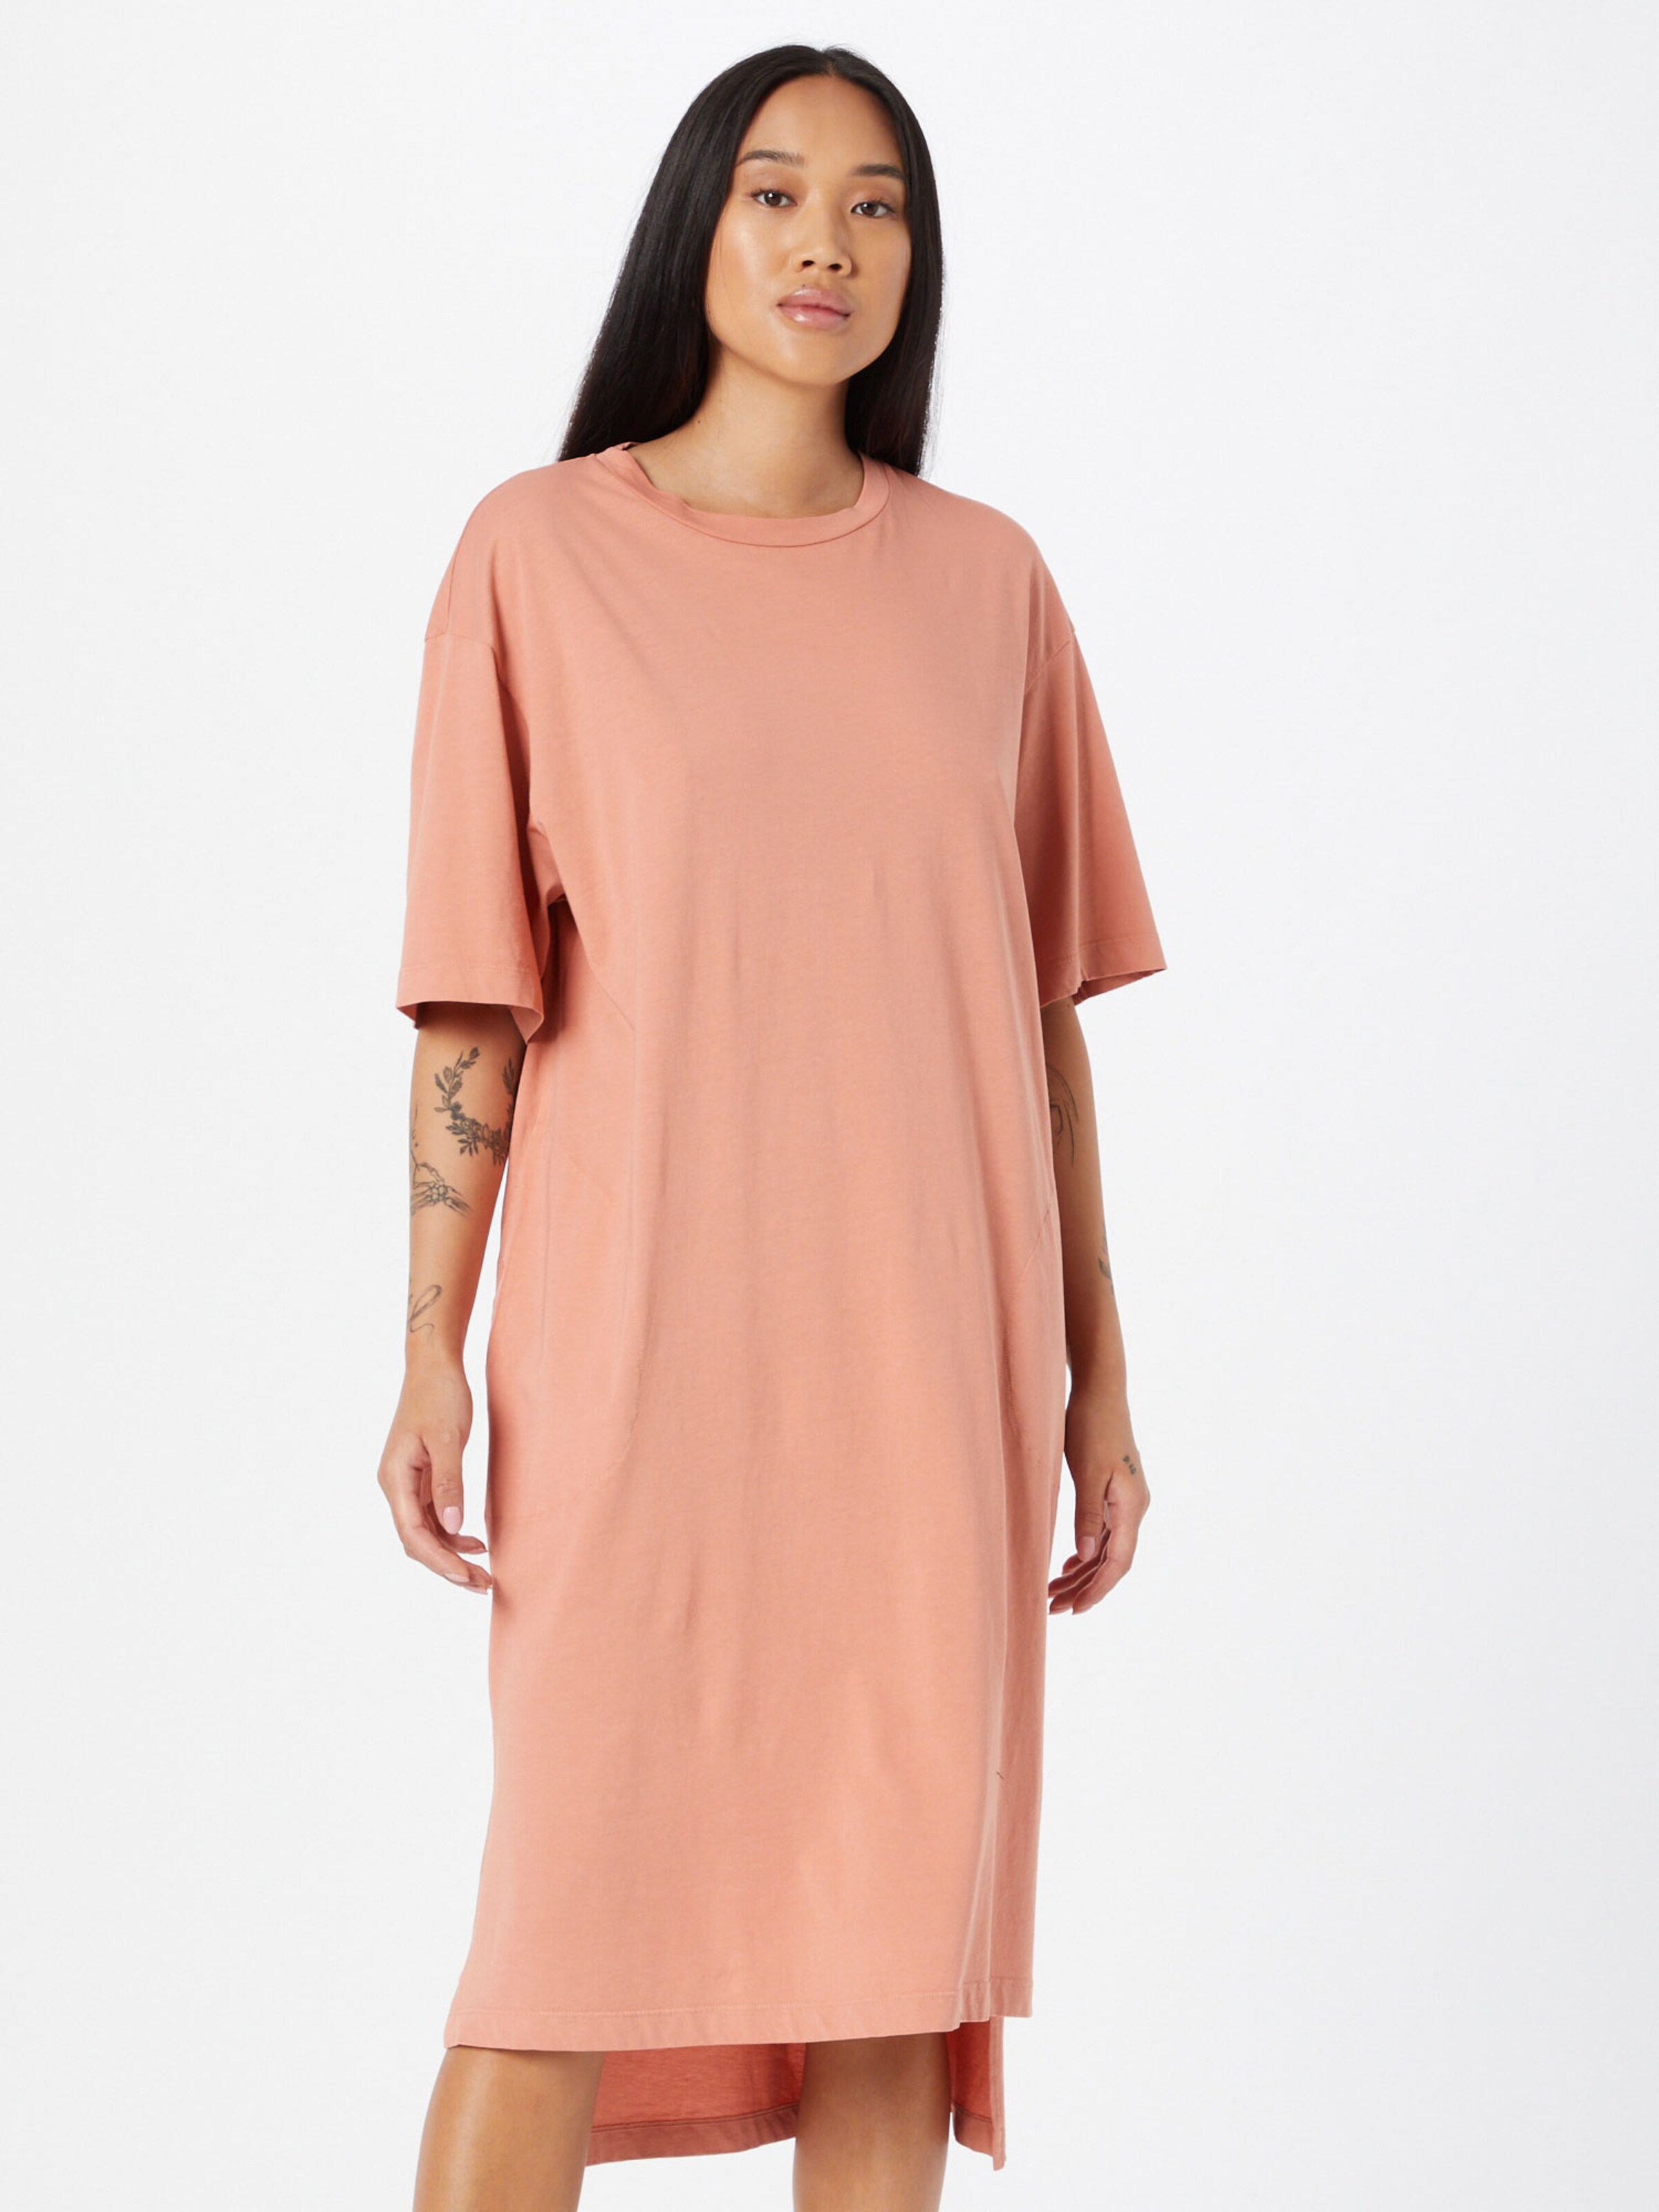 Kleid Bench pink Rückenausschnitt ärmellos Gr S M L XL